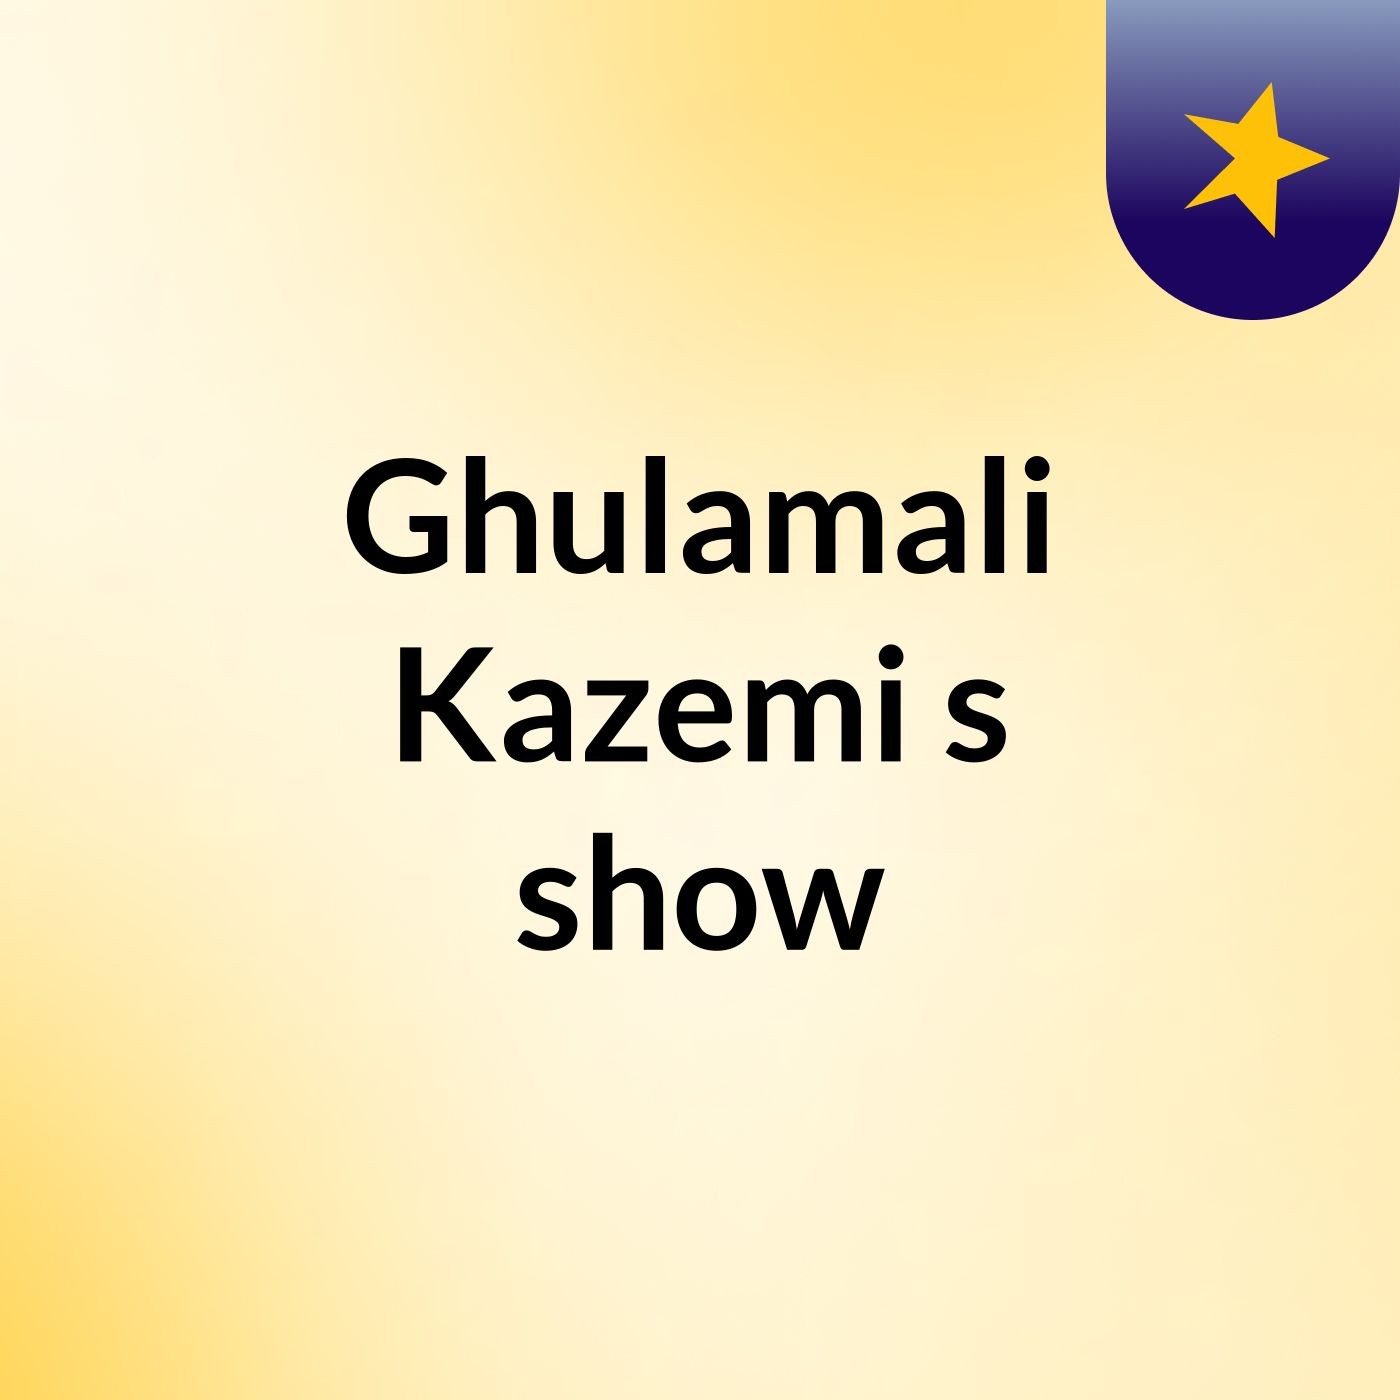 Ghulamali Kazemi's show